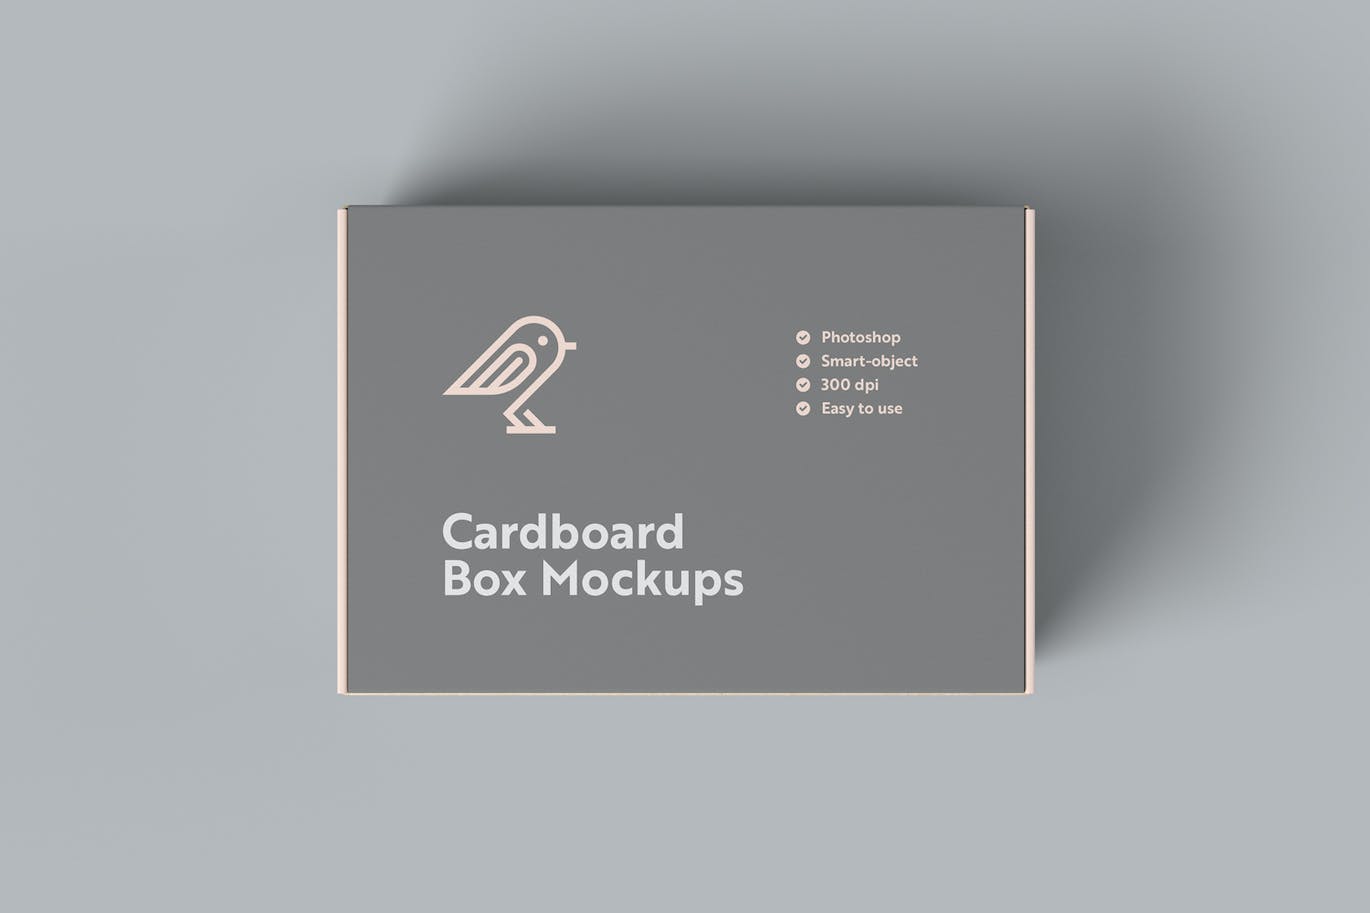 纸板箱包装设计样机模板 Cardboard Box Mockups 样机素材 第5张